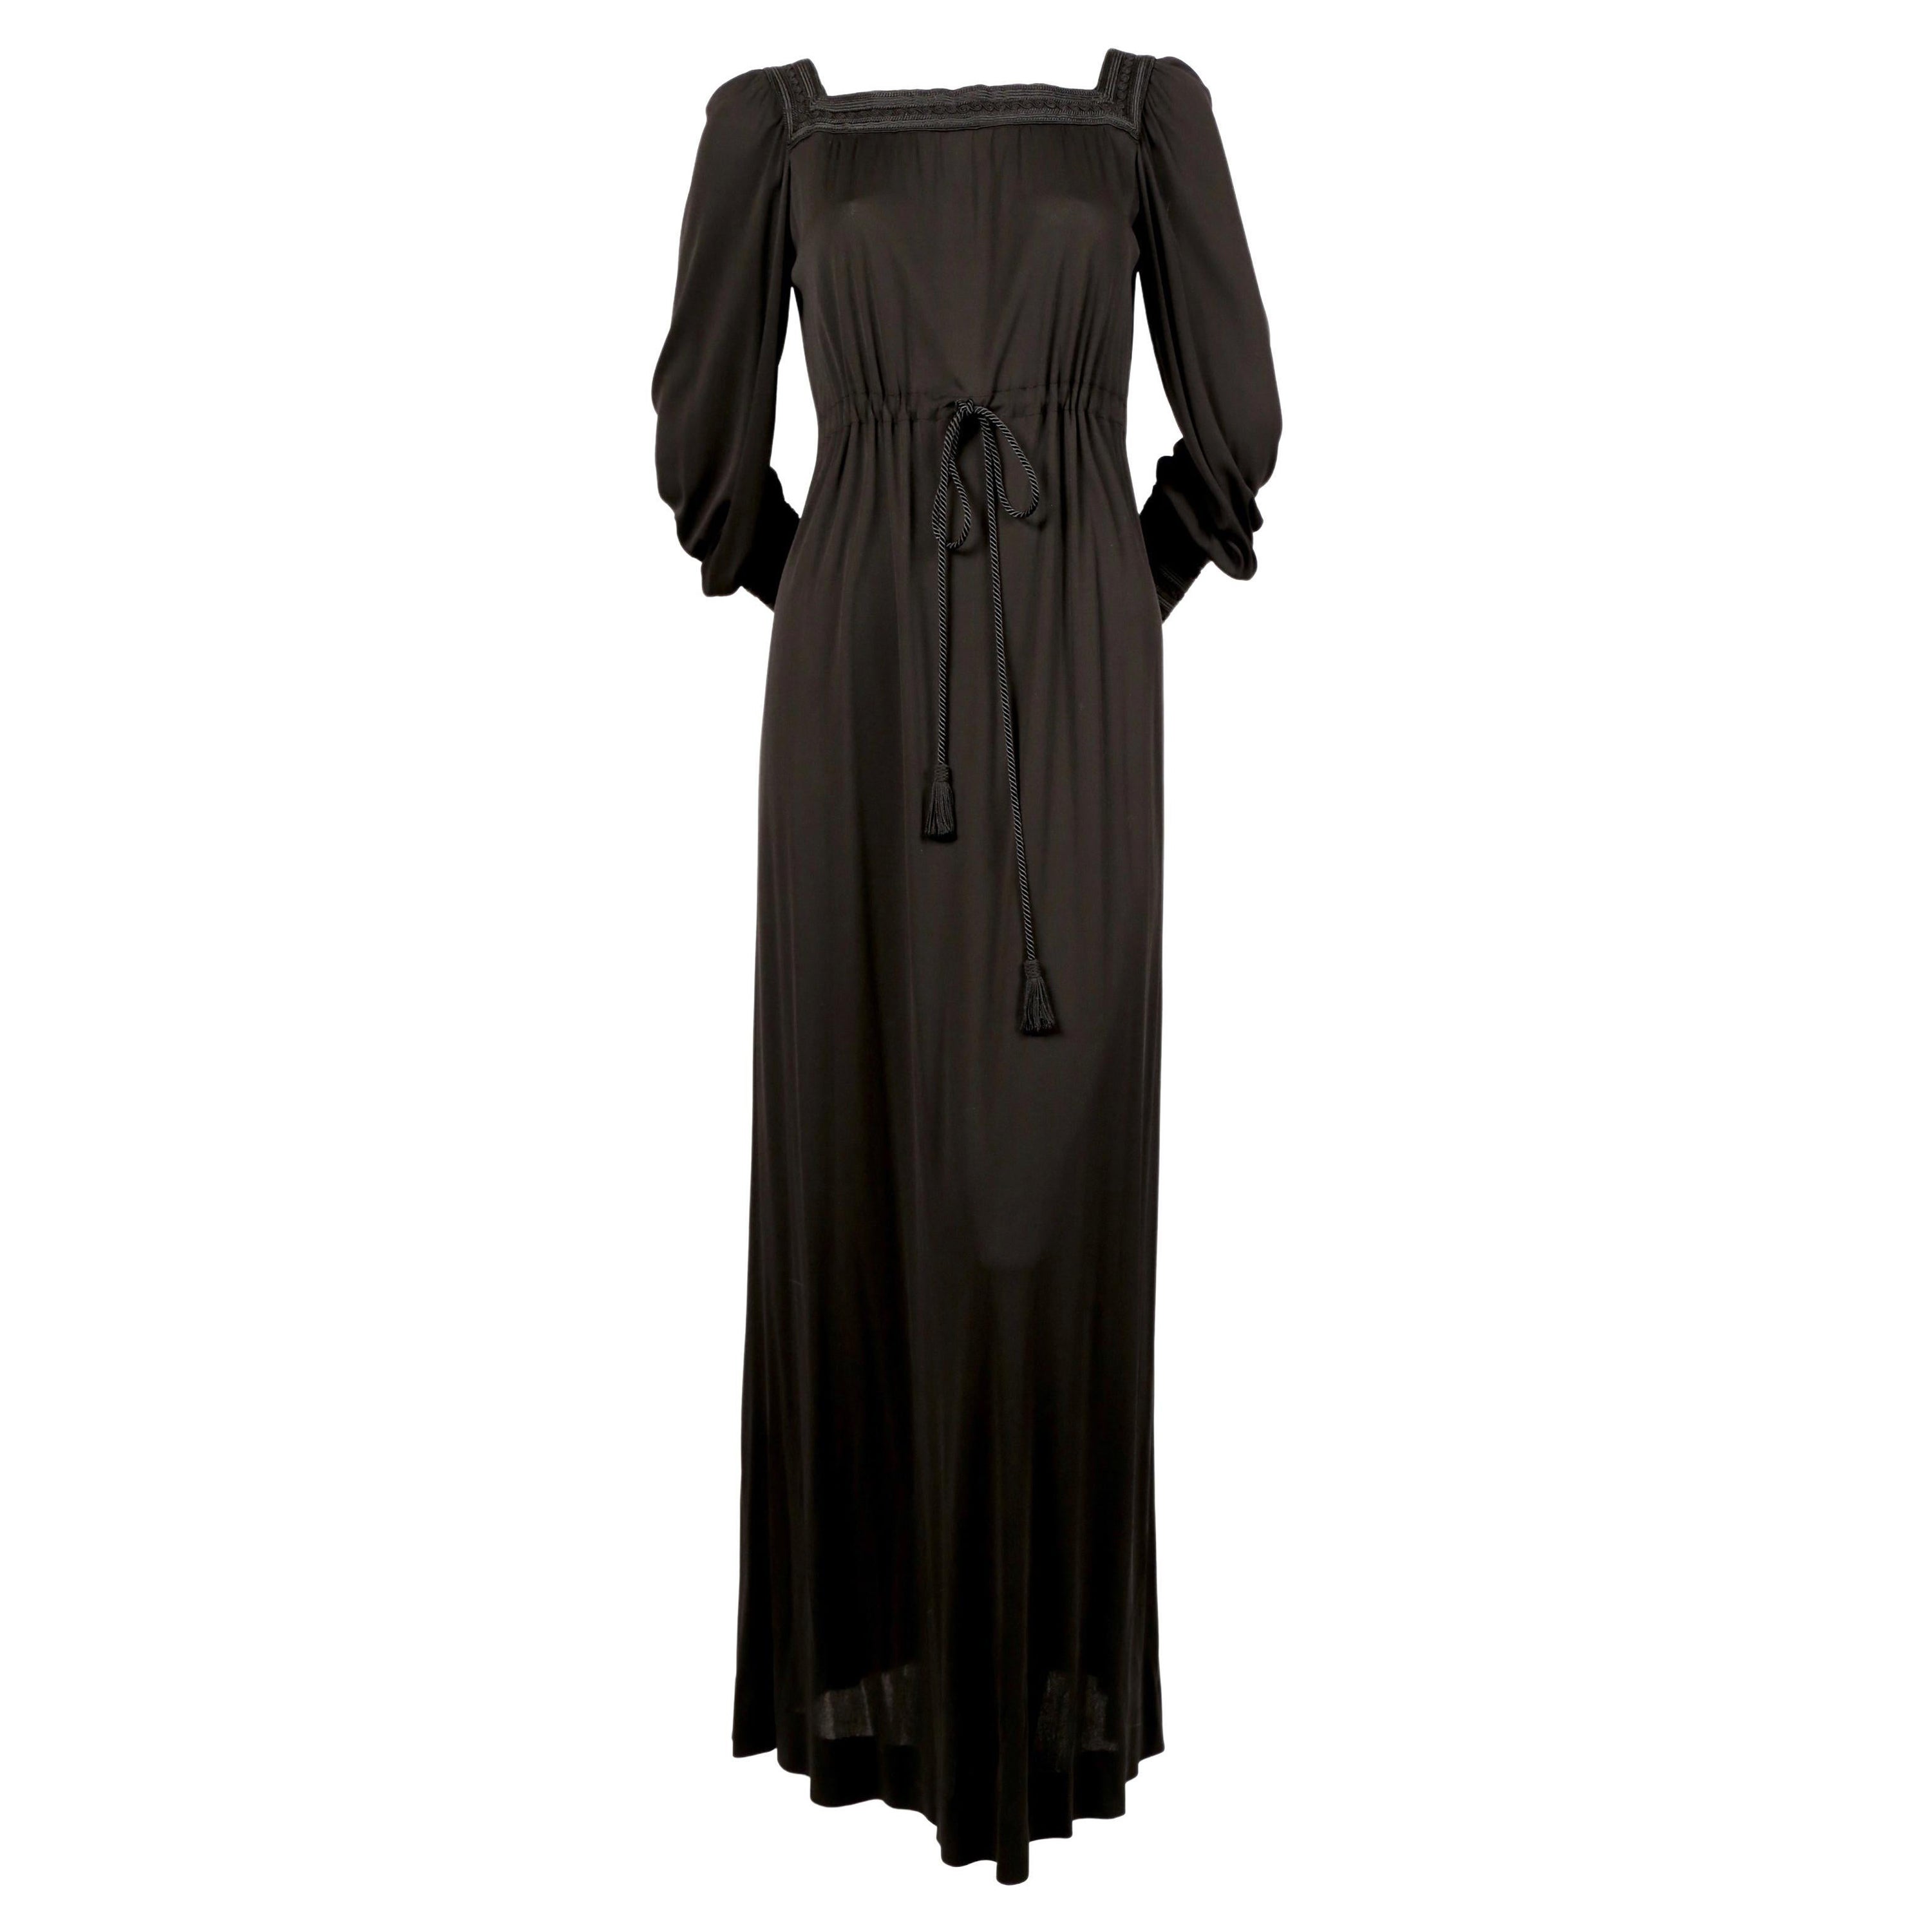 1974 YVES SAINT LAURENT black jersey gown with soutache trim For Sale